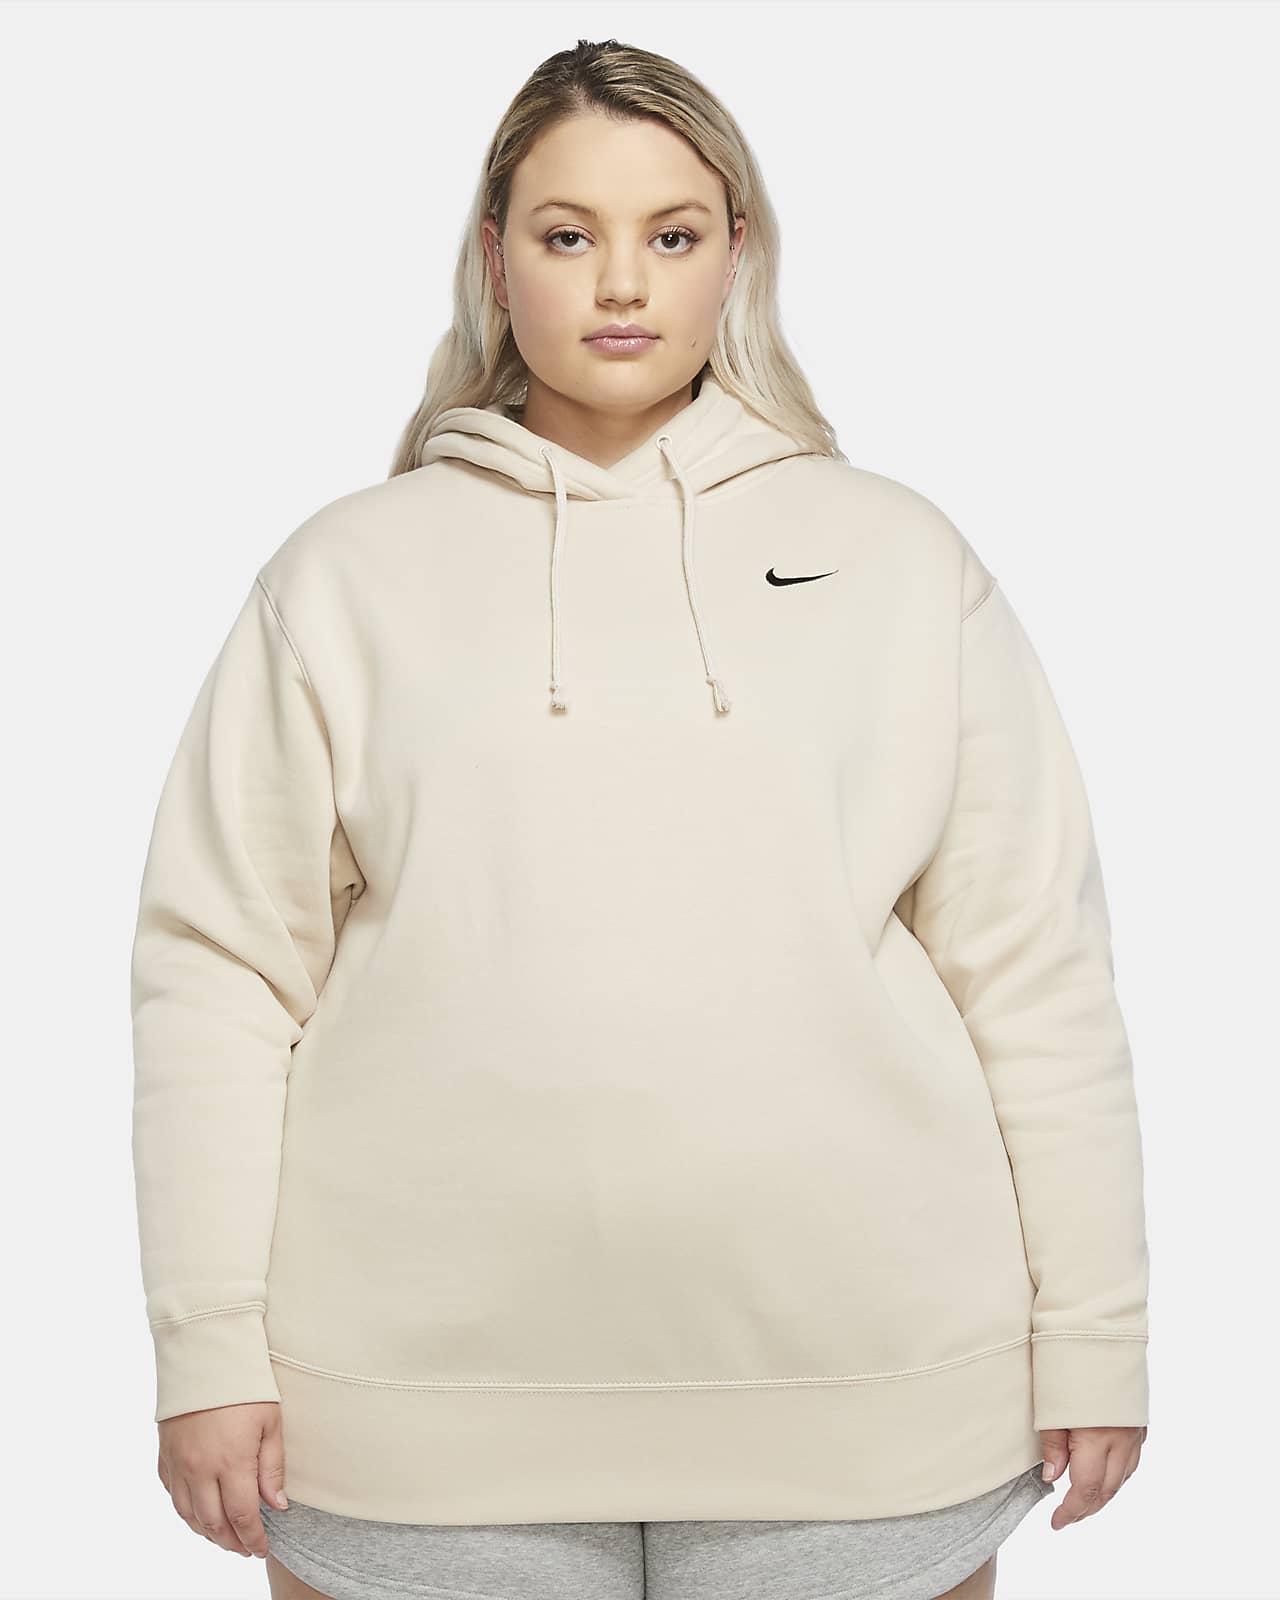 Nike Pullover Für Damen